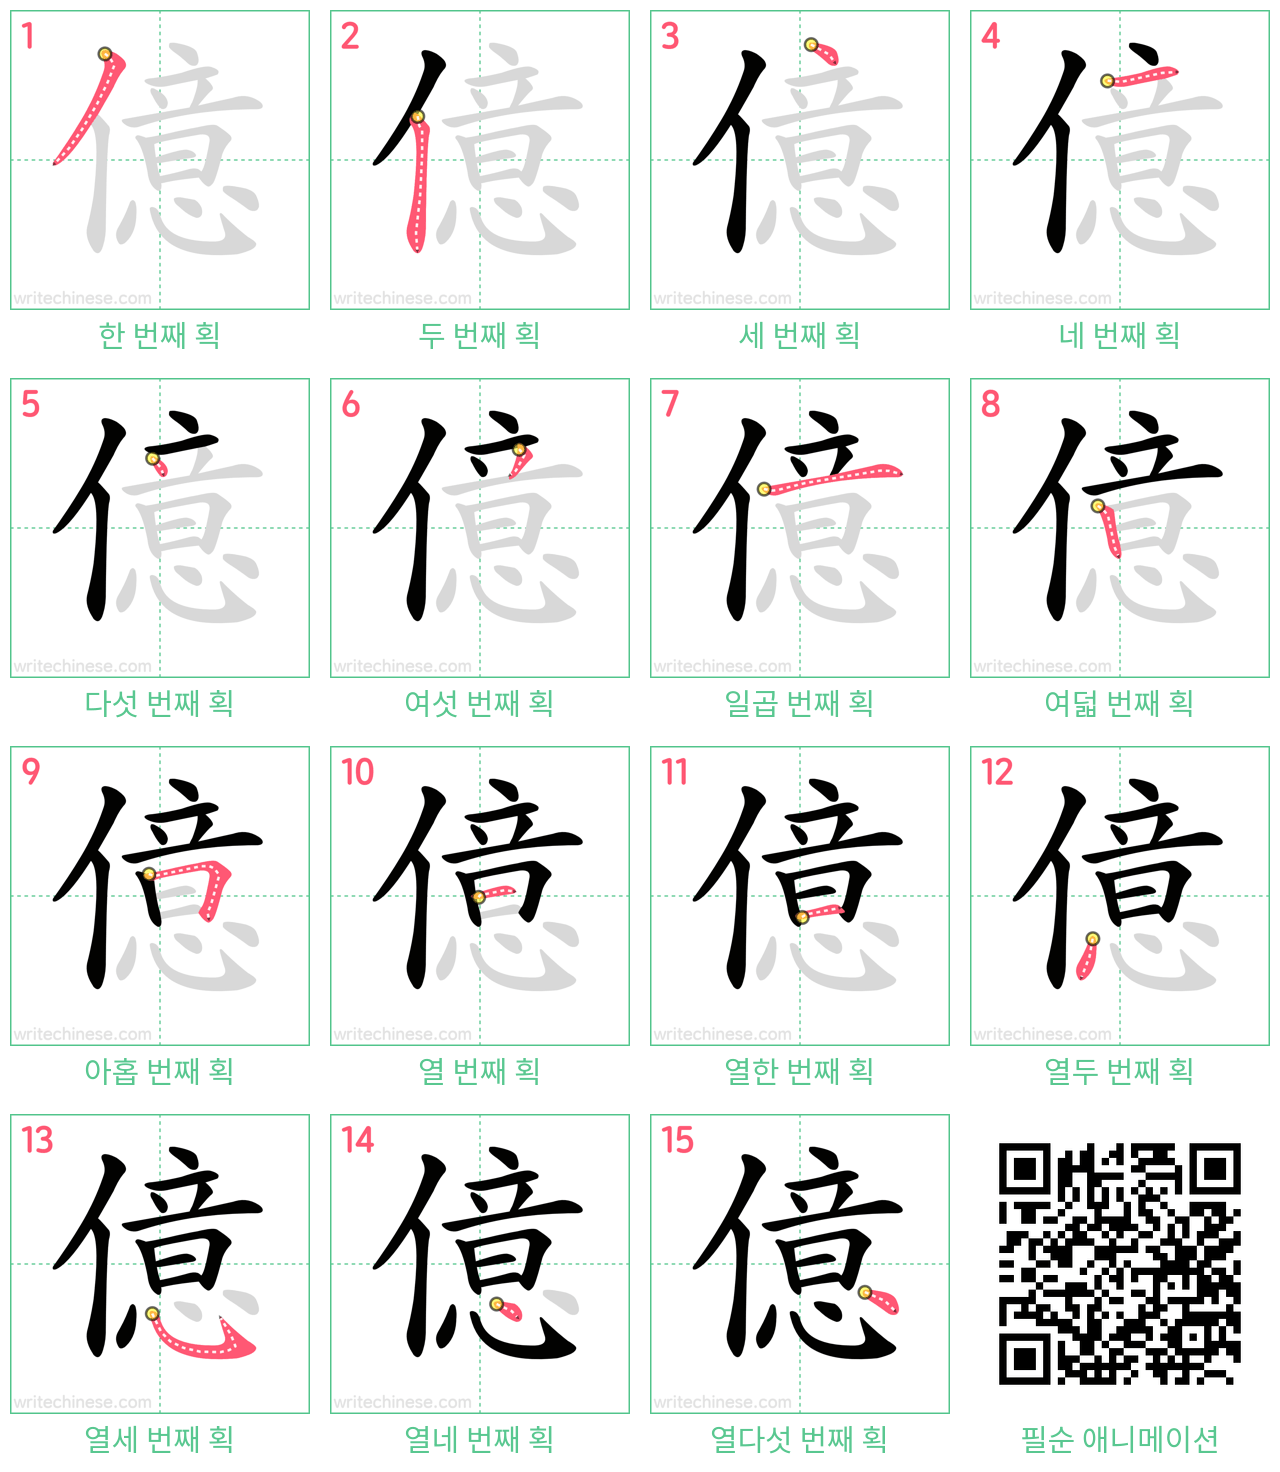 億 step-by-step stroke order diagrams